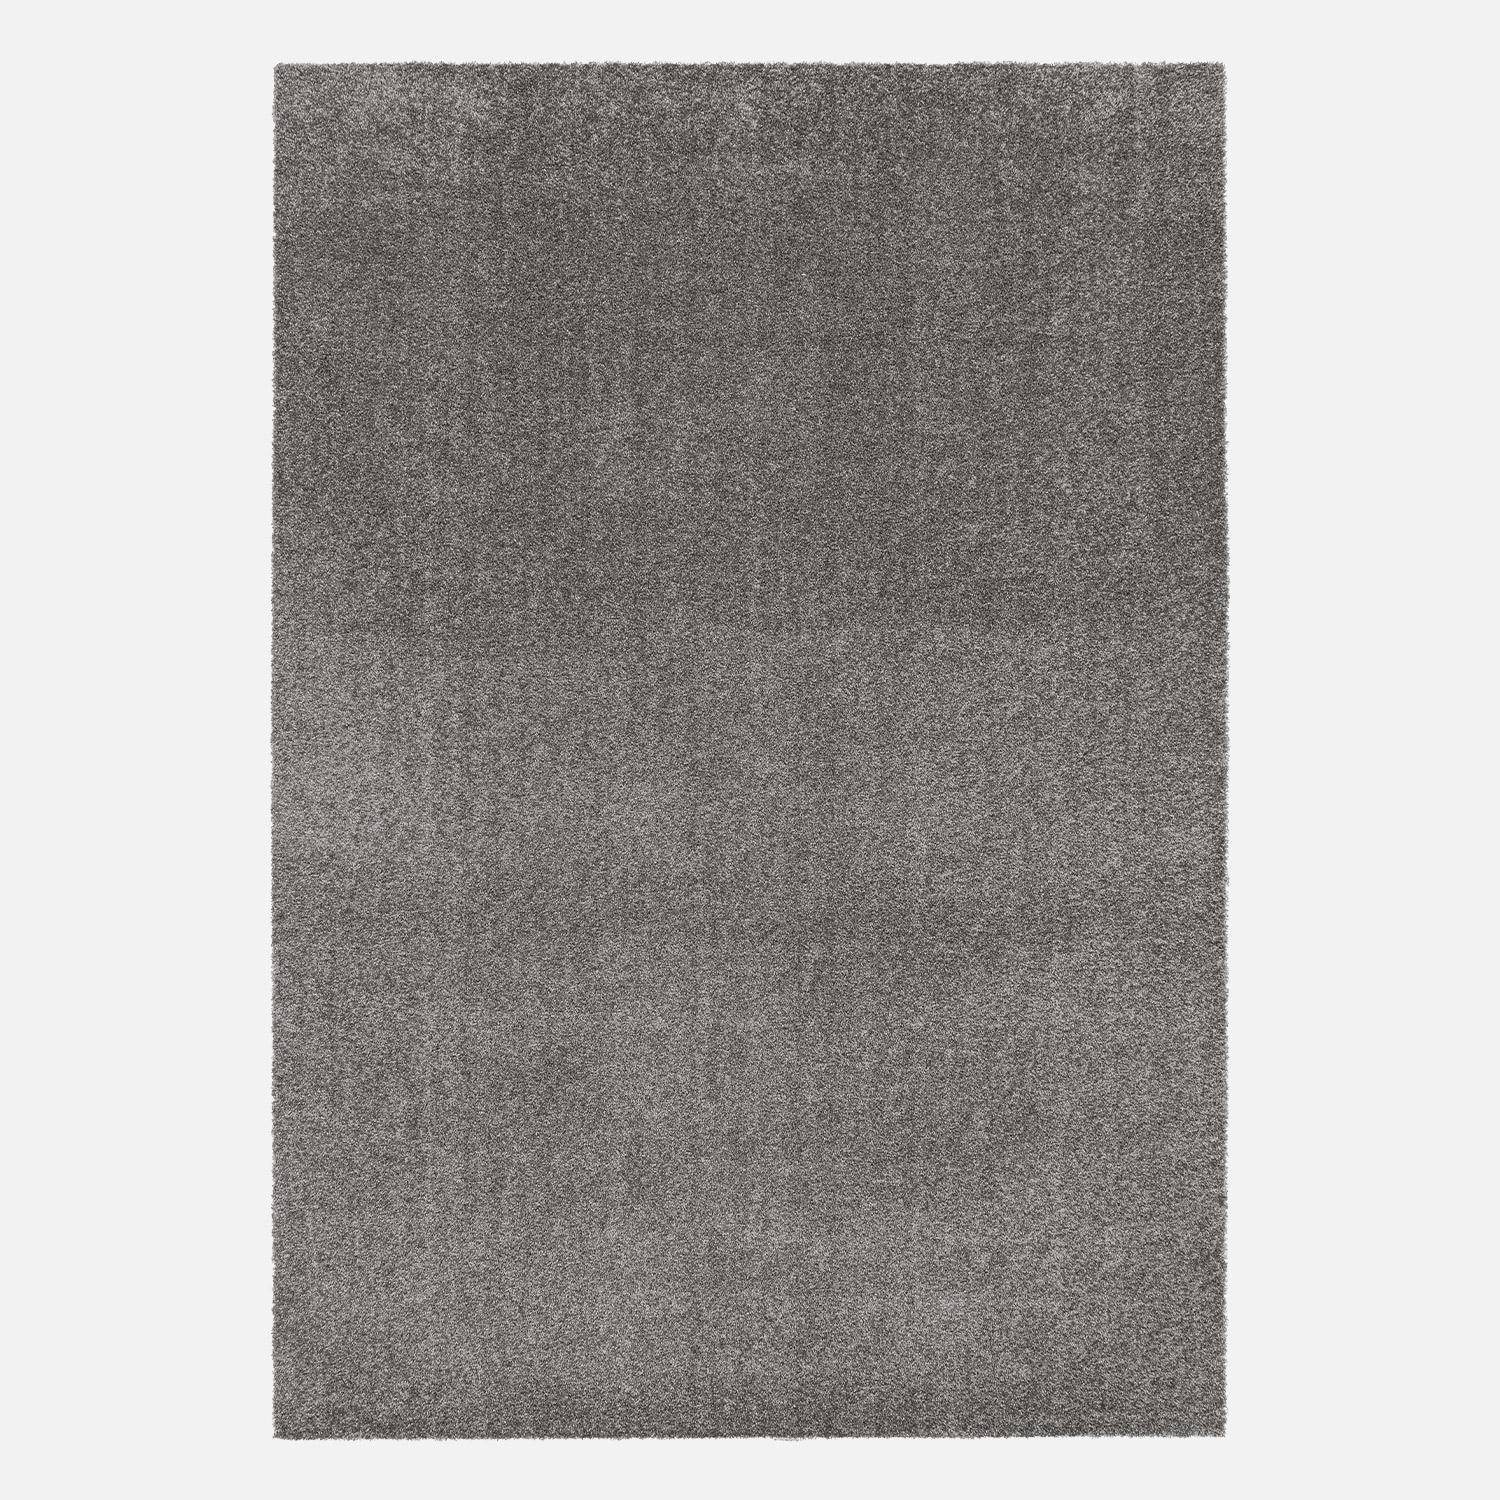 Tappeto per interni in velluto riccio grigio antracite, 80x150cm, a pelo corto con effetto pelo ad anello Photo4